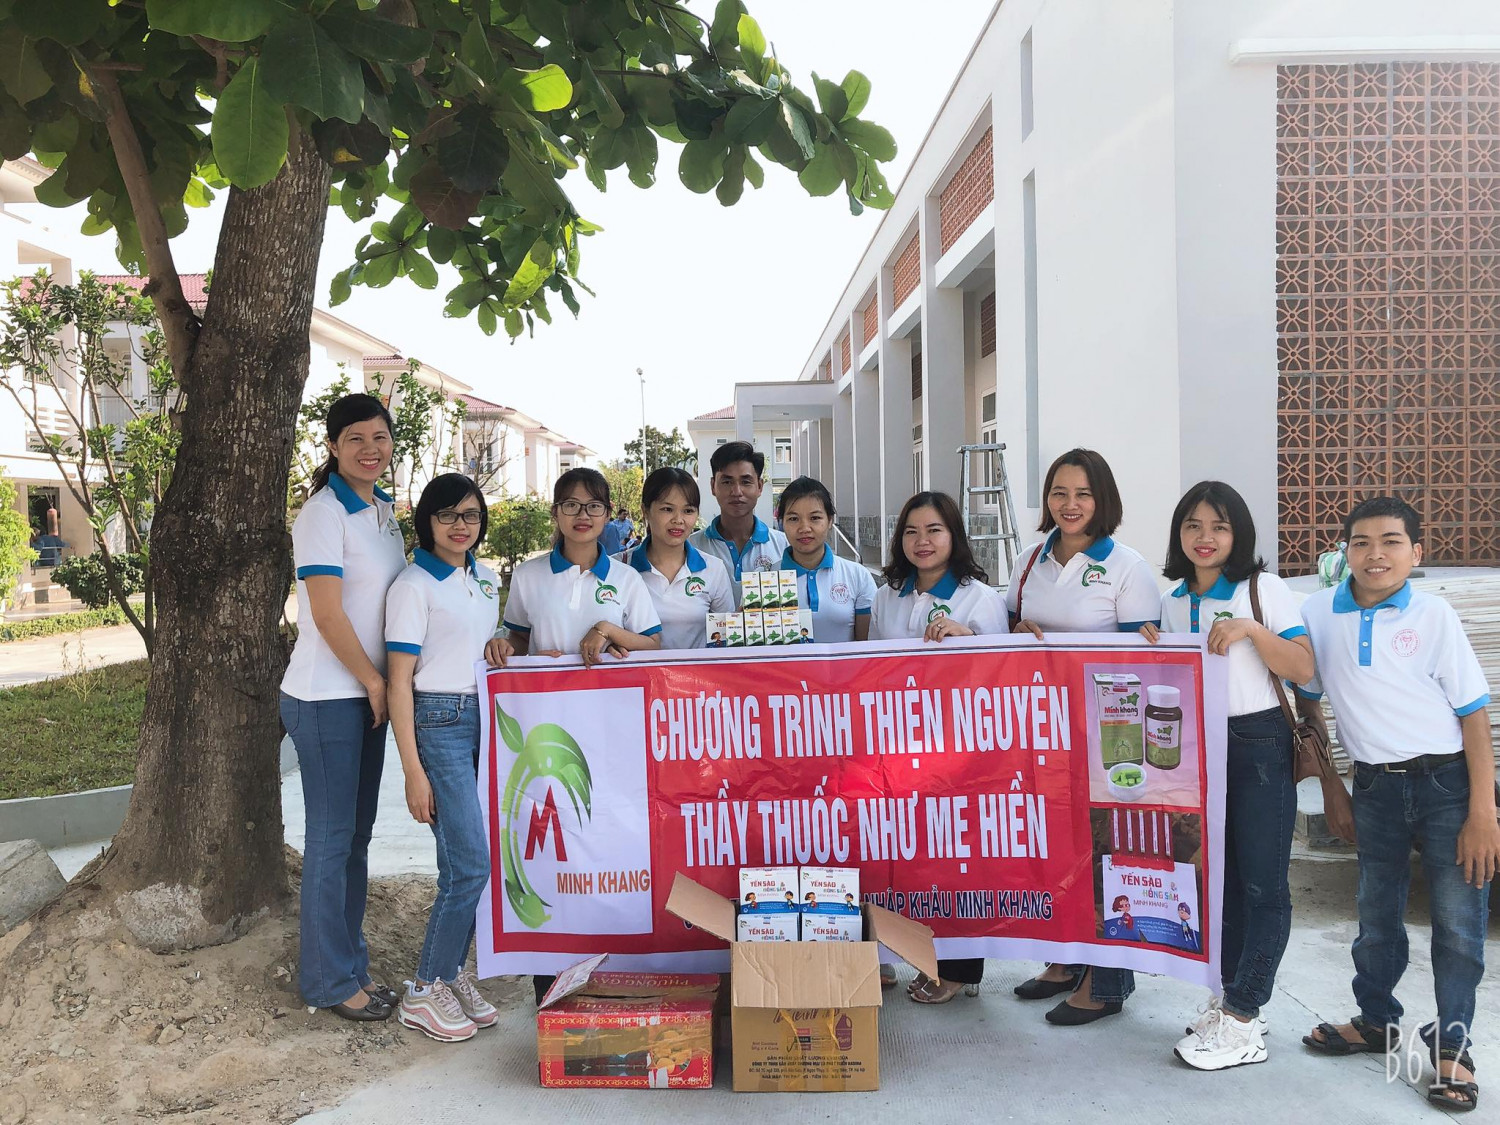 Chương trình thiện nguyện tại Đà Nẵng của công ty Minh Khang